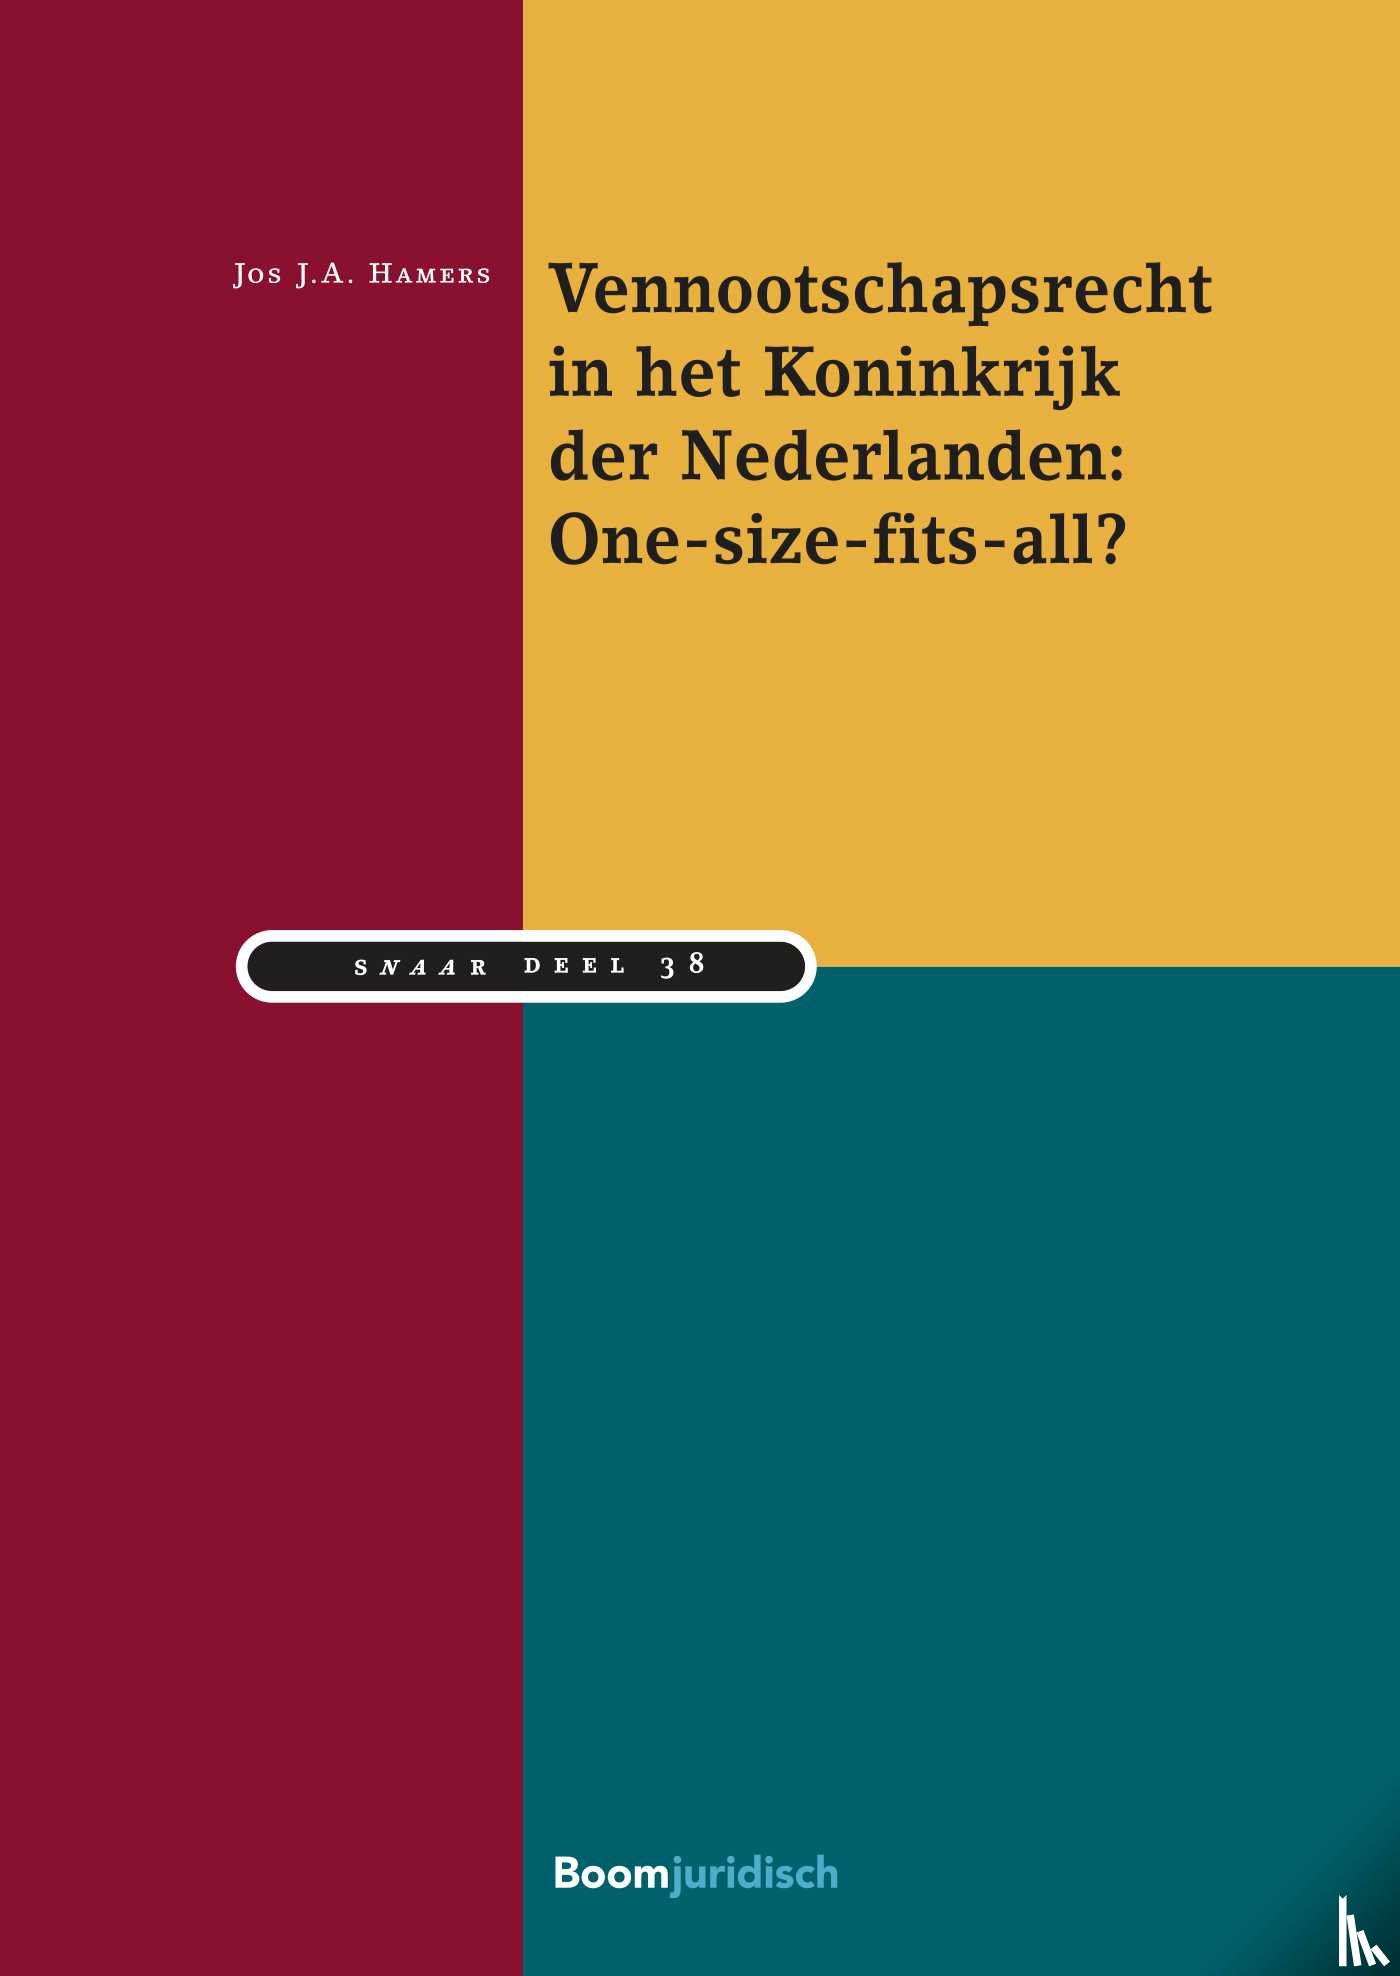 Hamers, Jos J.A. - Vennootschapsrecht in het Koninkrijk der Nederlanden: One-size-fits-all?